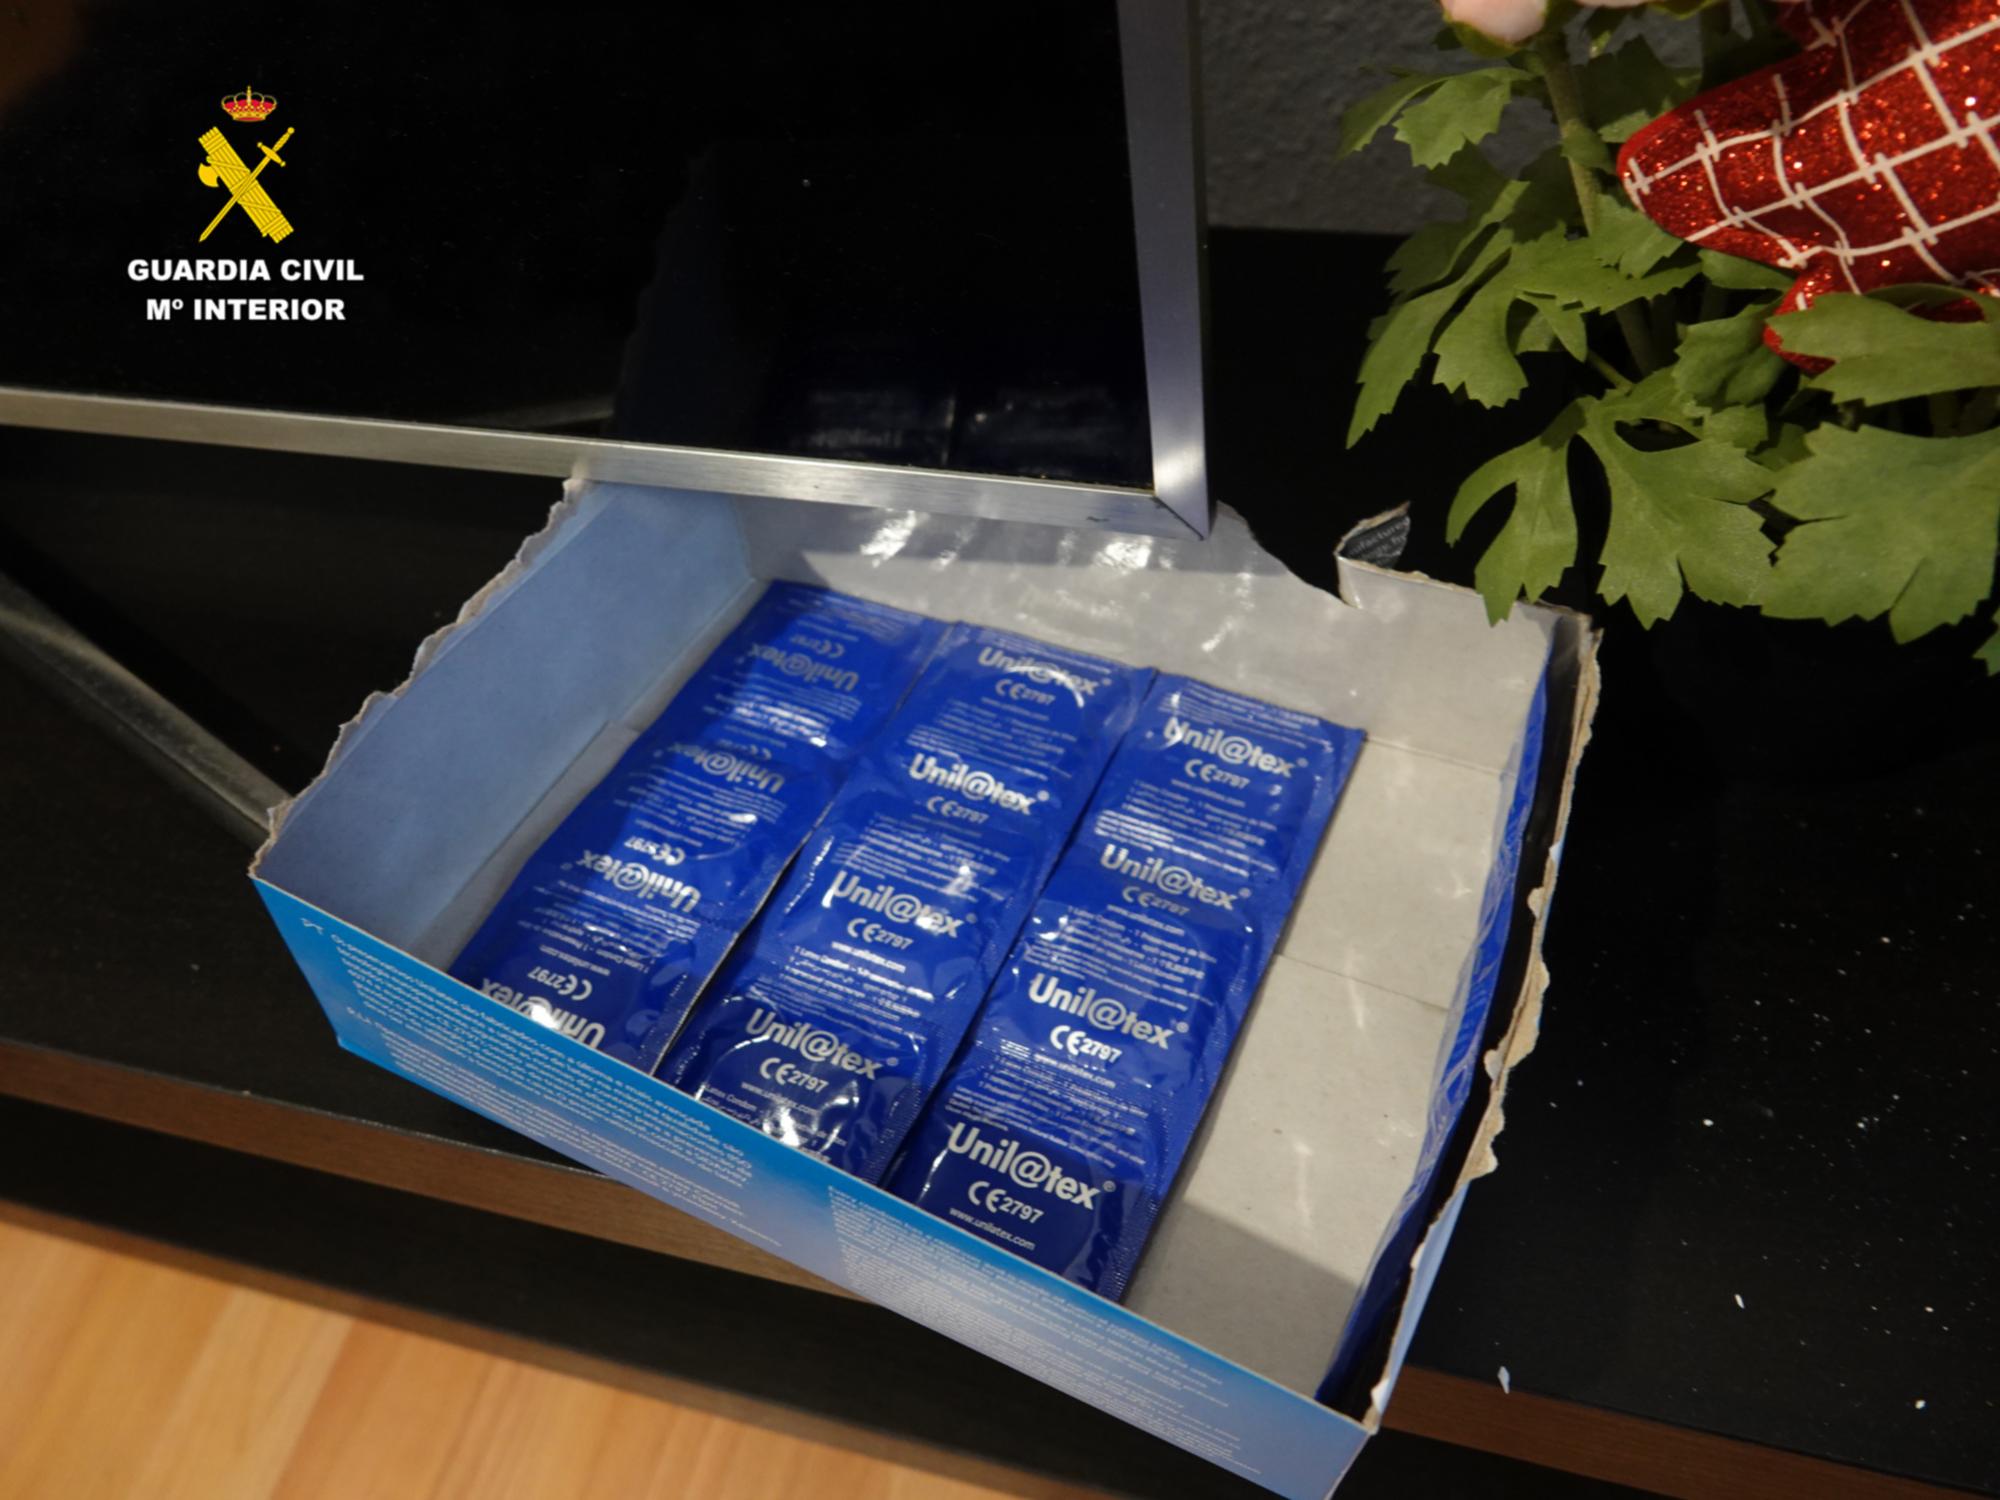 Imagen de una caja de preservativos encontrado durante el registro